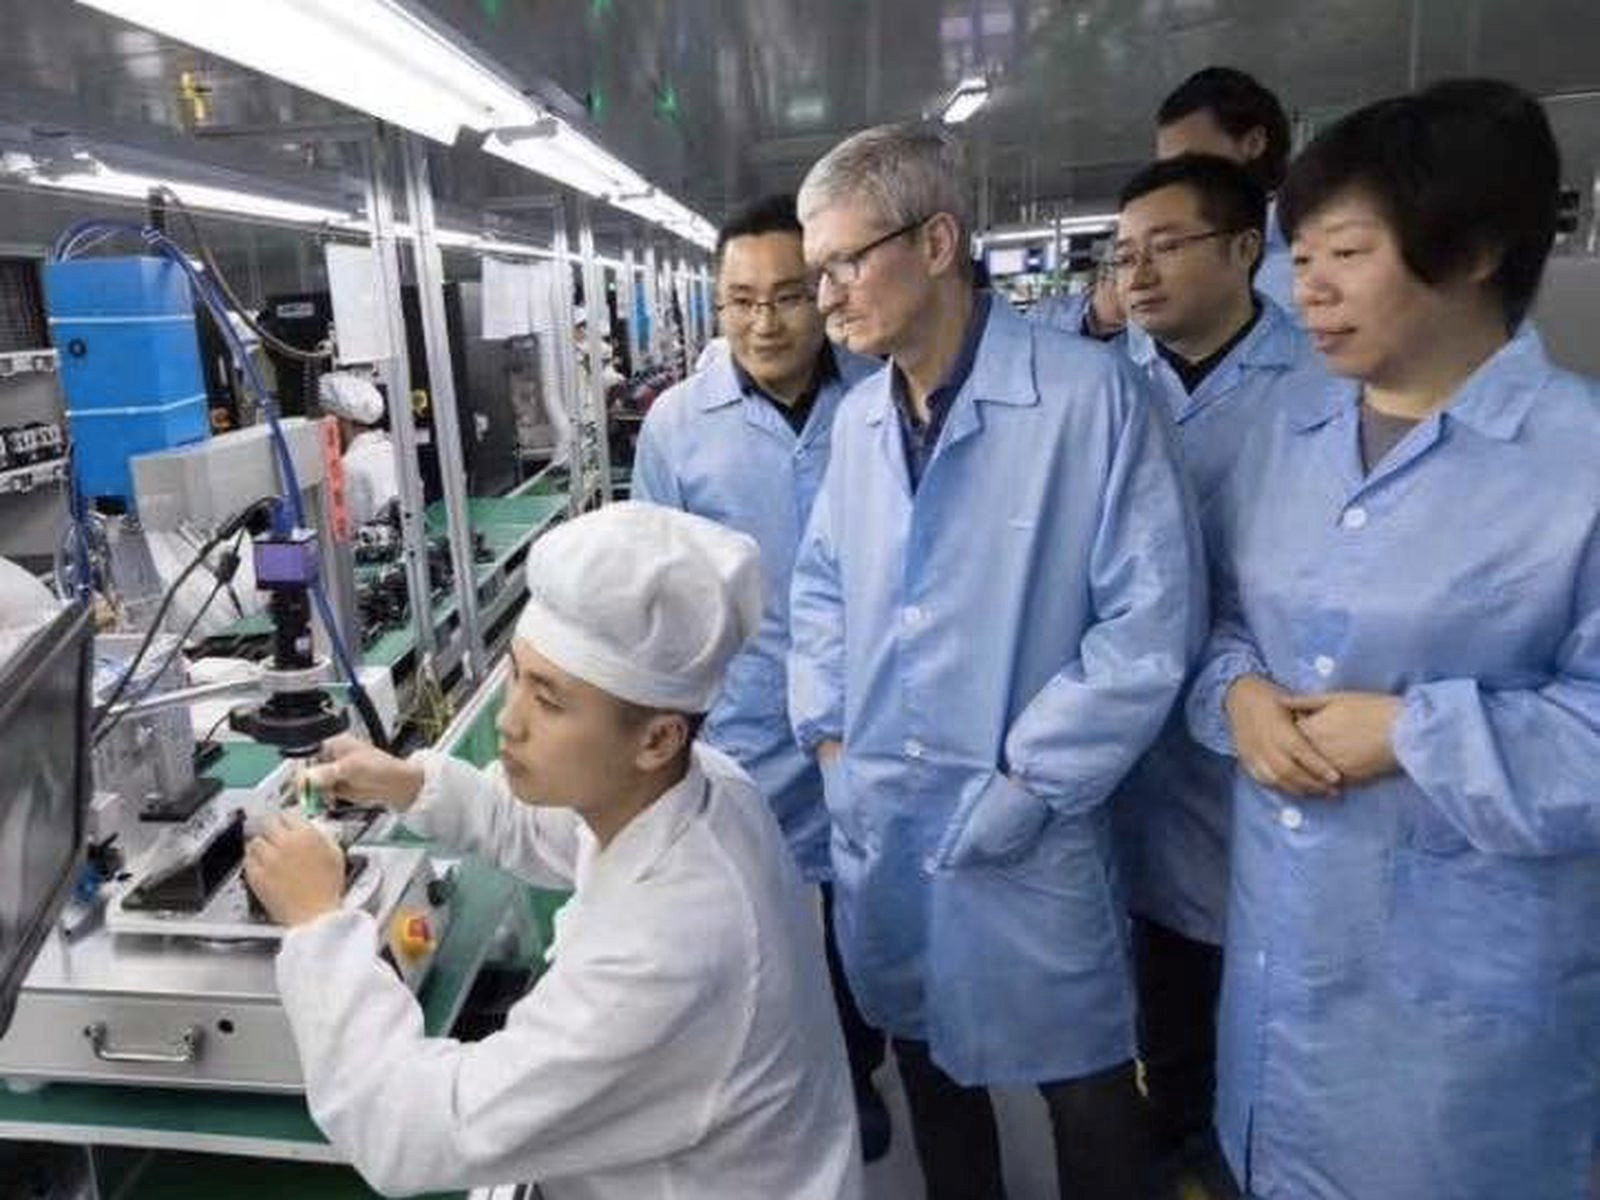 Chớp lấy thời cơ để đi lên, xuất khẩu iPhone dự kiến thu về gần 60 ngàn tỷ đồng cho Ấn Độ - Việt Nam cạnh tranh ra sao? - Ảnh 1.